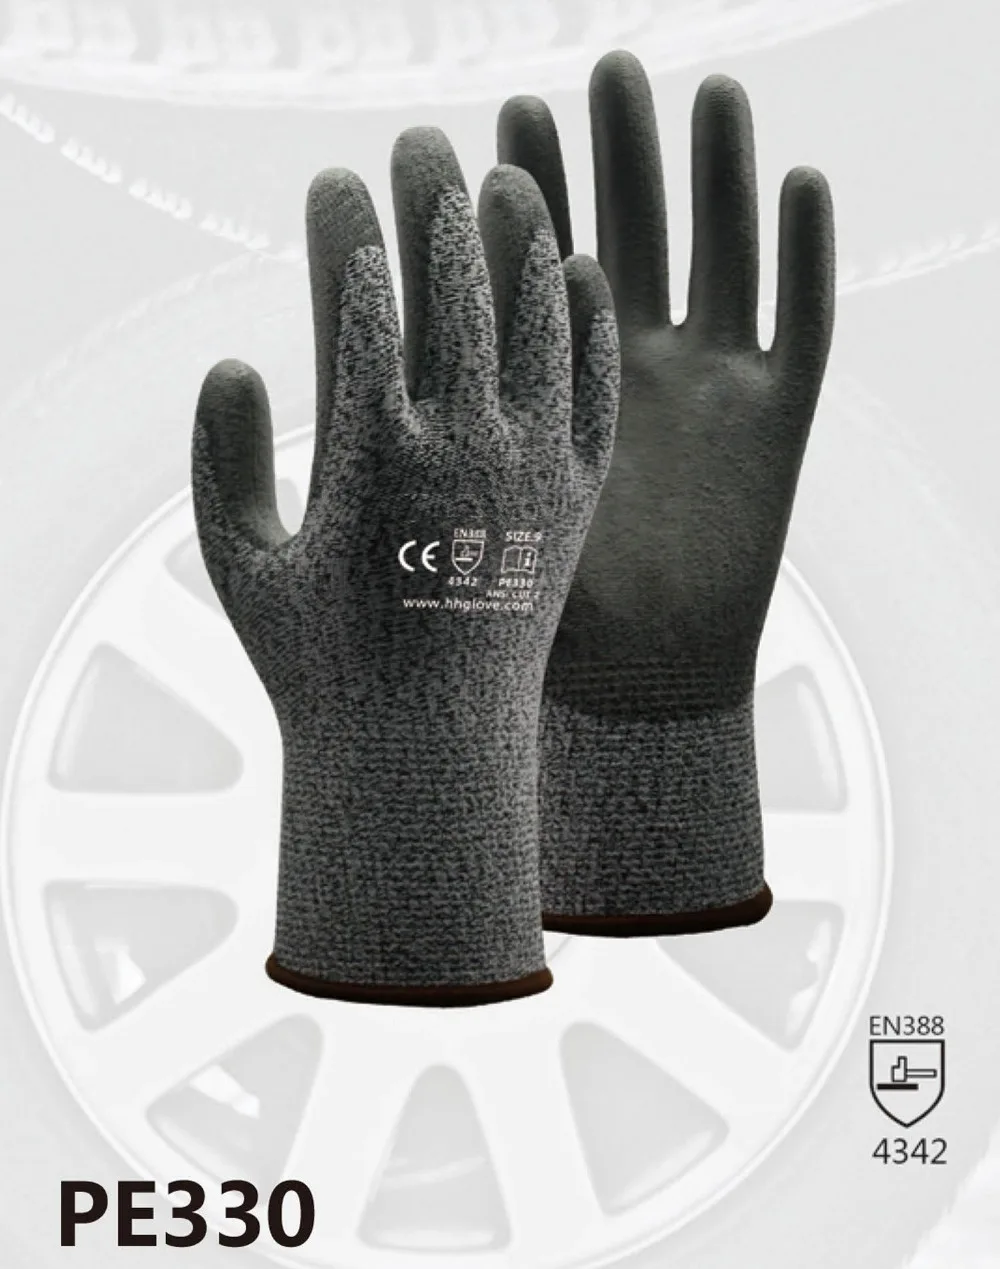 Порезов защитные перчатки порезостойкие труда перчатка HPPE с покрытые ПУ против пореза рабочие перчатки